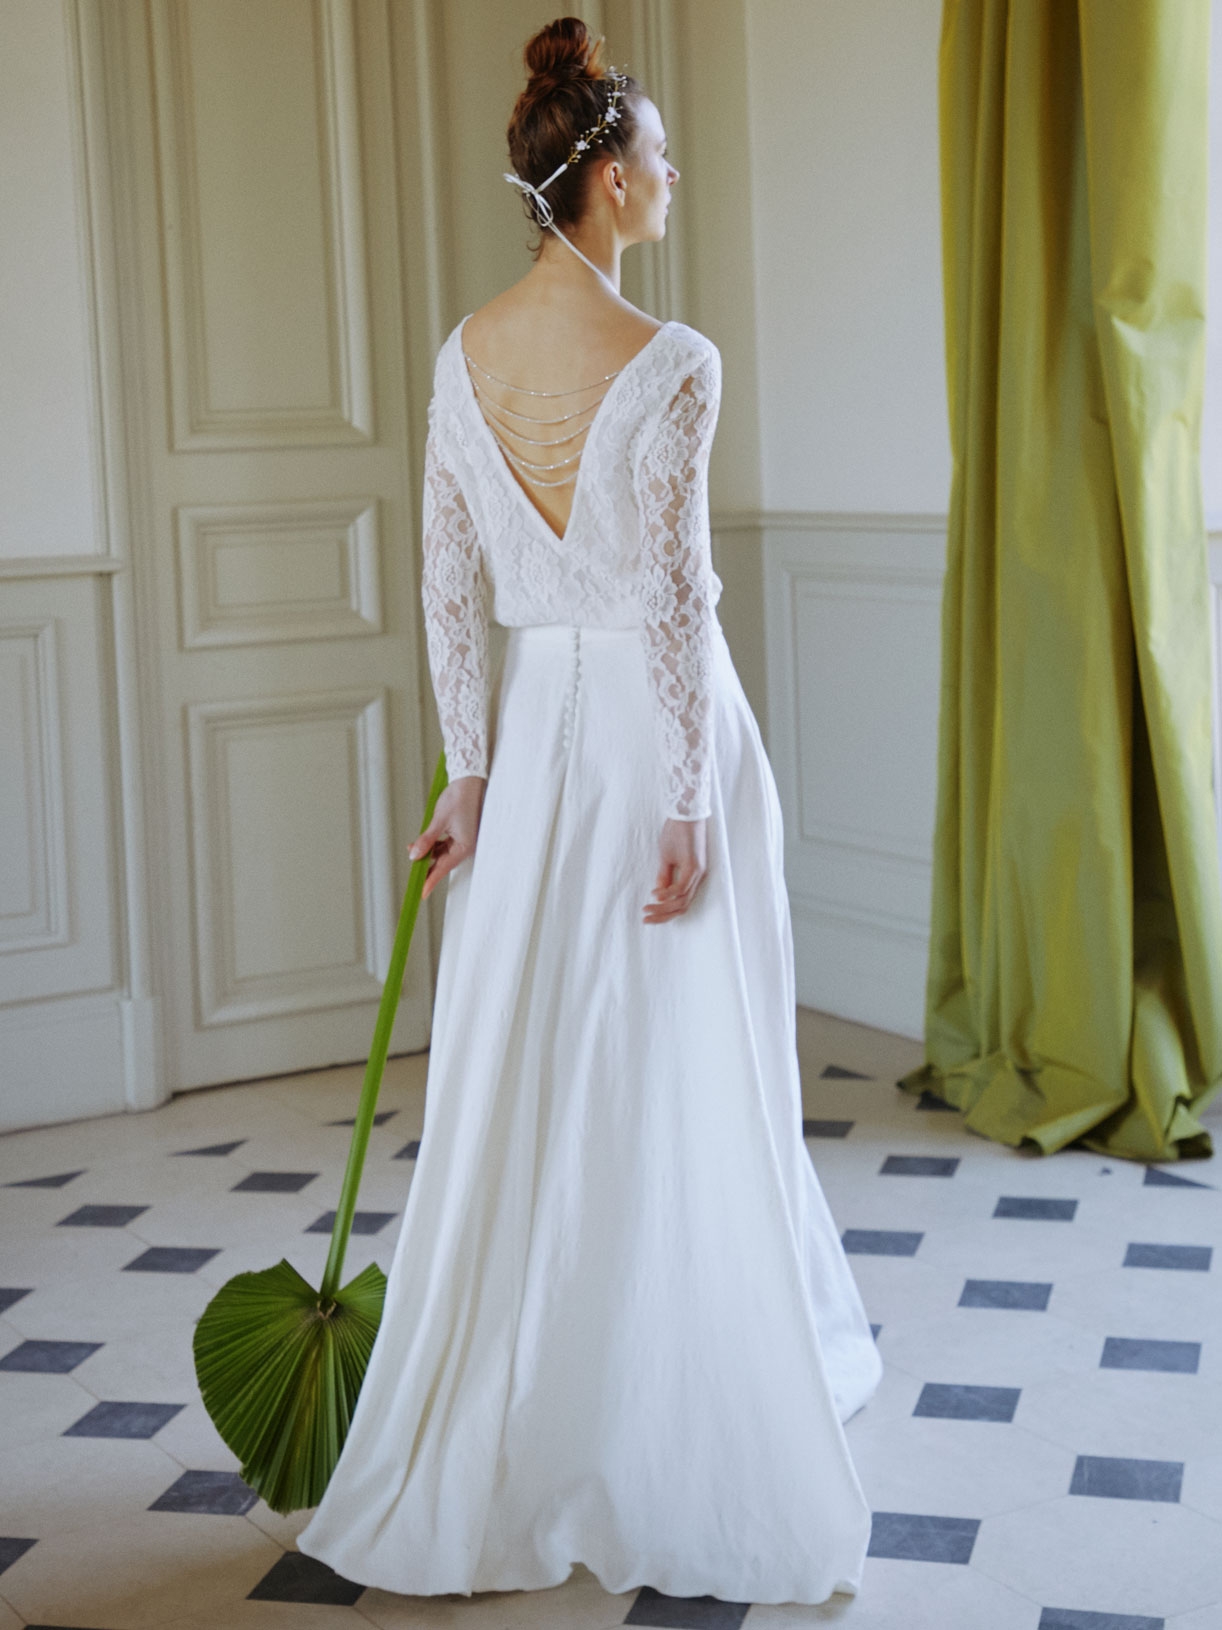 LOU - Blouse de mariée dos-nu en dentelle  - Créatrice de robes de mariée sur-mesure éthique et bio sur Paris - Myphilosophy